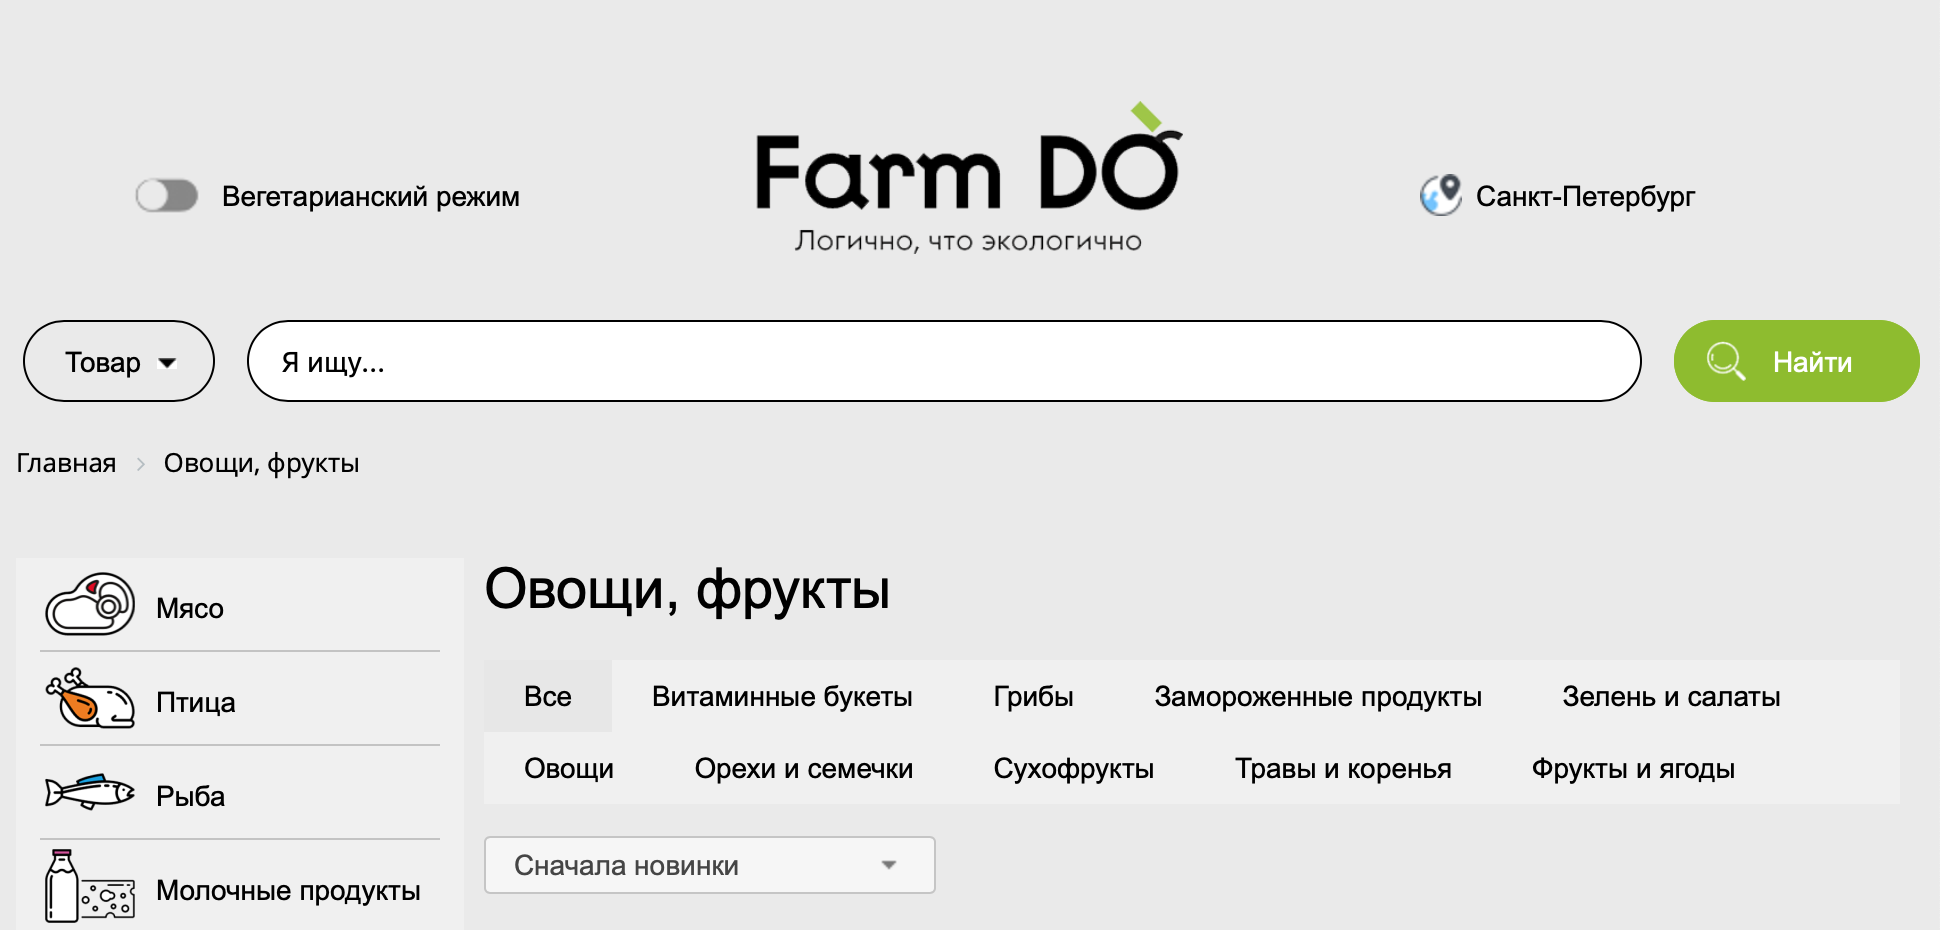 farmdo - фермерский маркетплейс